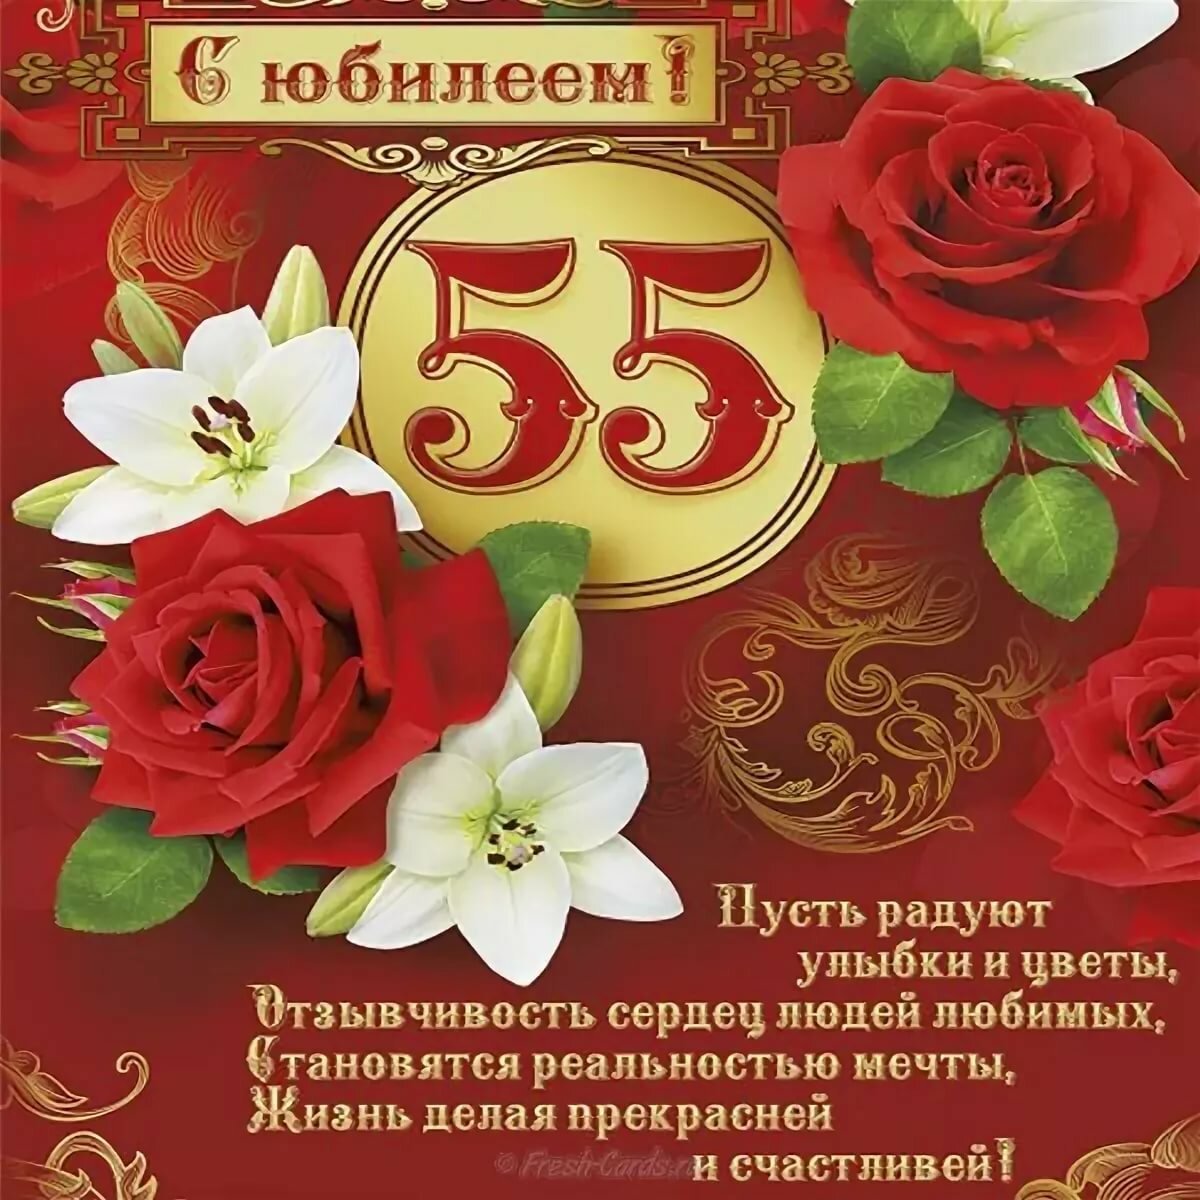 Поздравление с юбилеем 55 лет